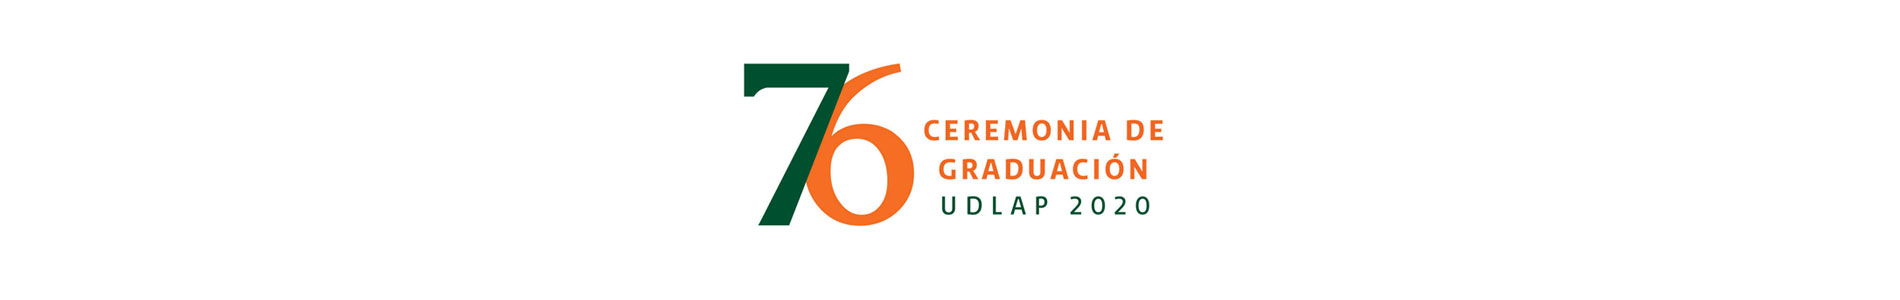 Graduación 76 - UDLAP